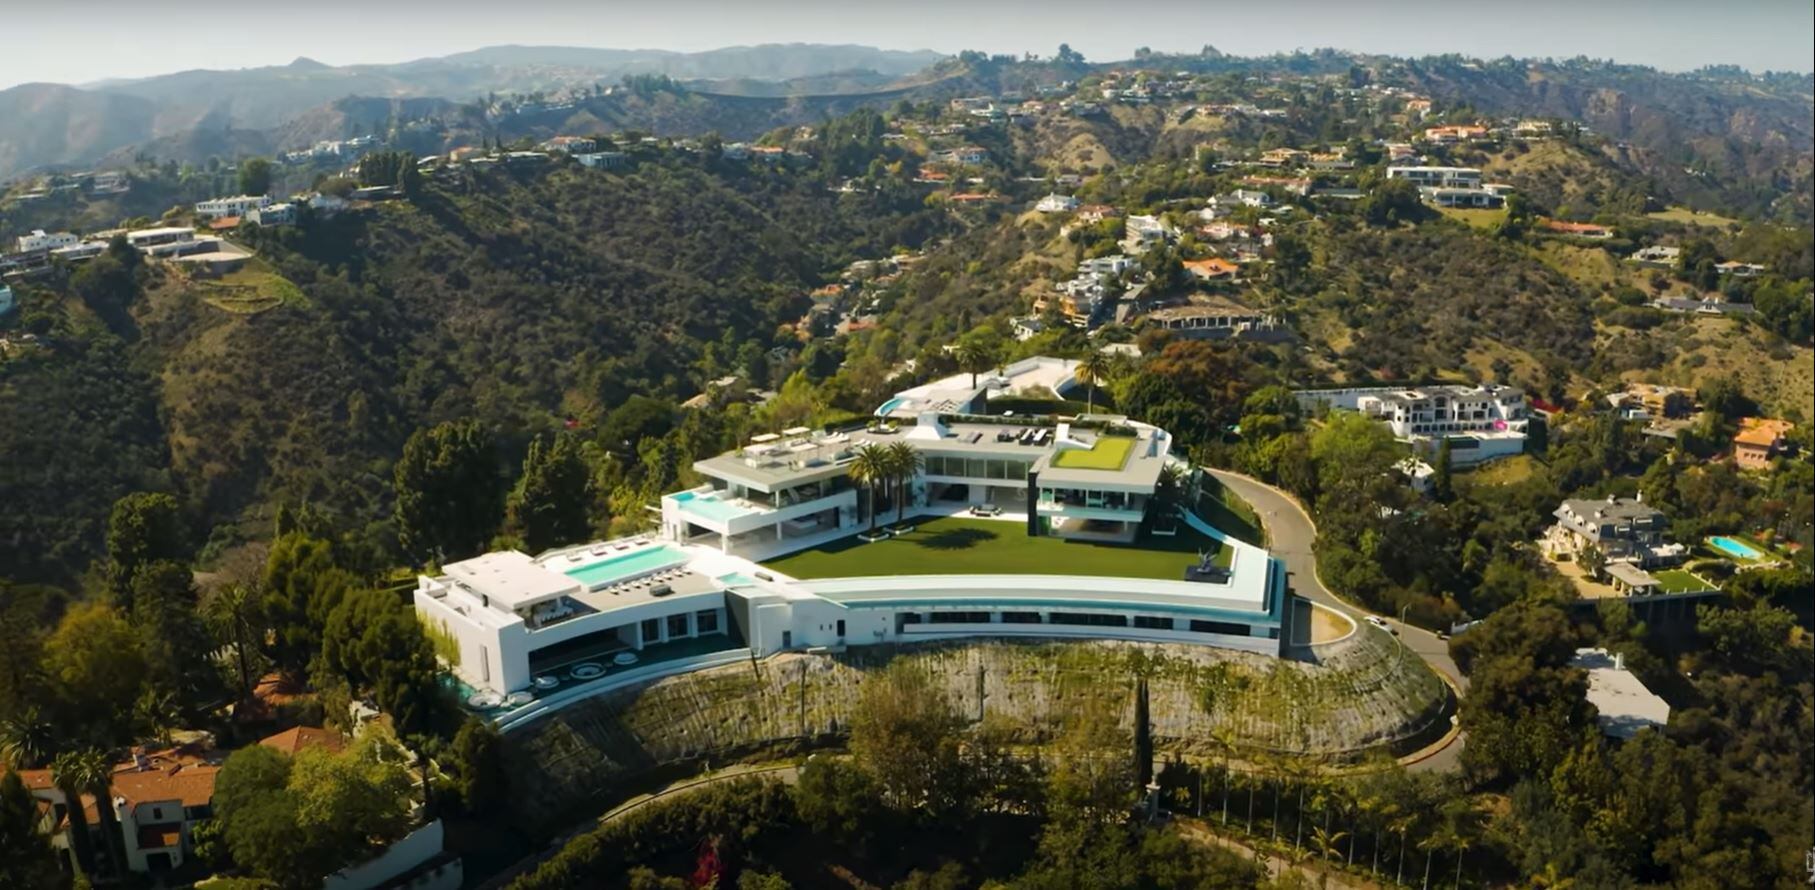 The One, la casa más cara del mundo ubicada en Bel Air, Los Ángeles, con un precio de salida de 500 millones de dólares, en las colinas de Santa Mónica (Foto: Youtube/ProducerMichael)